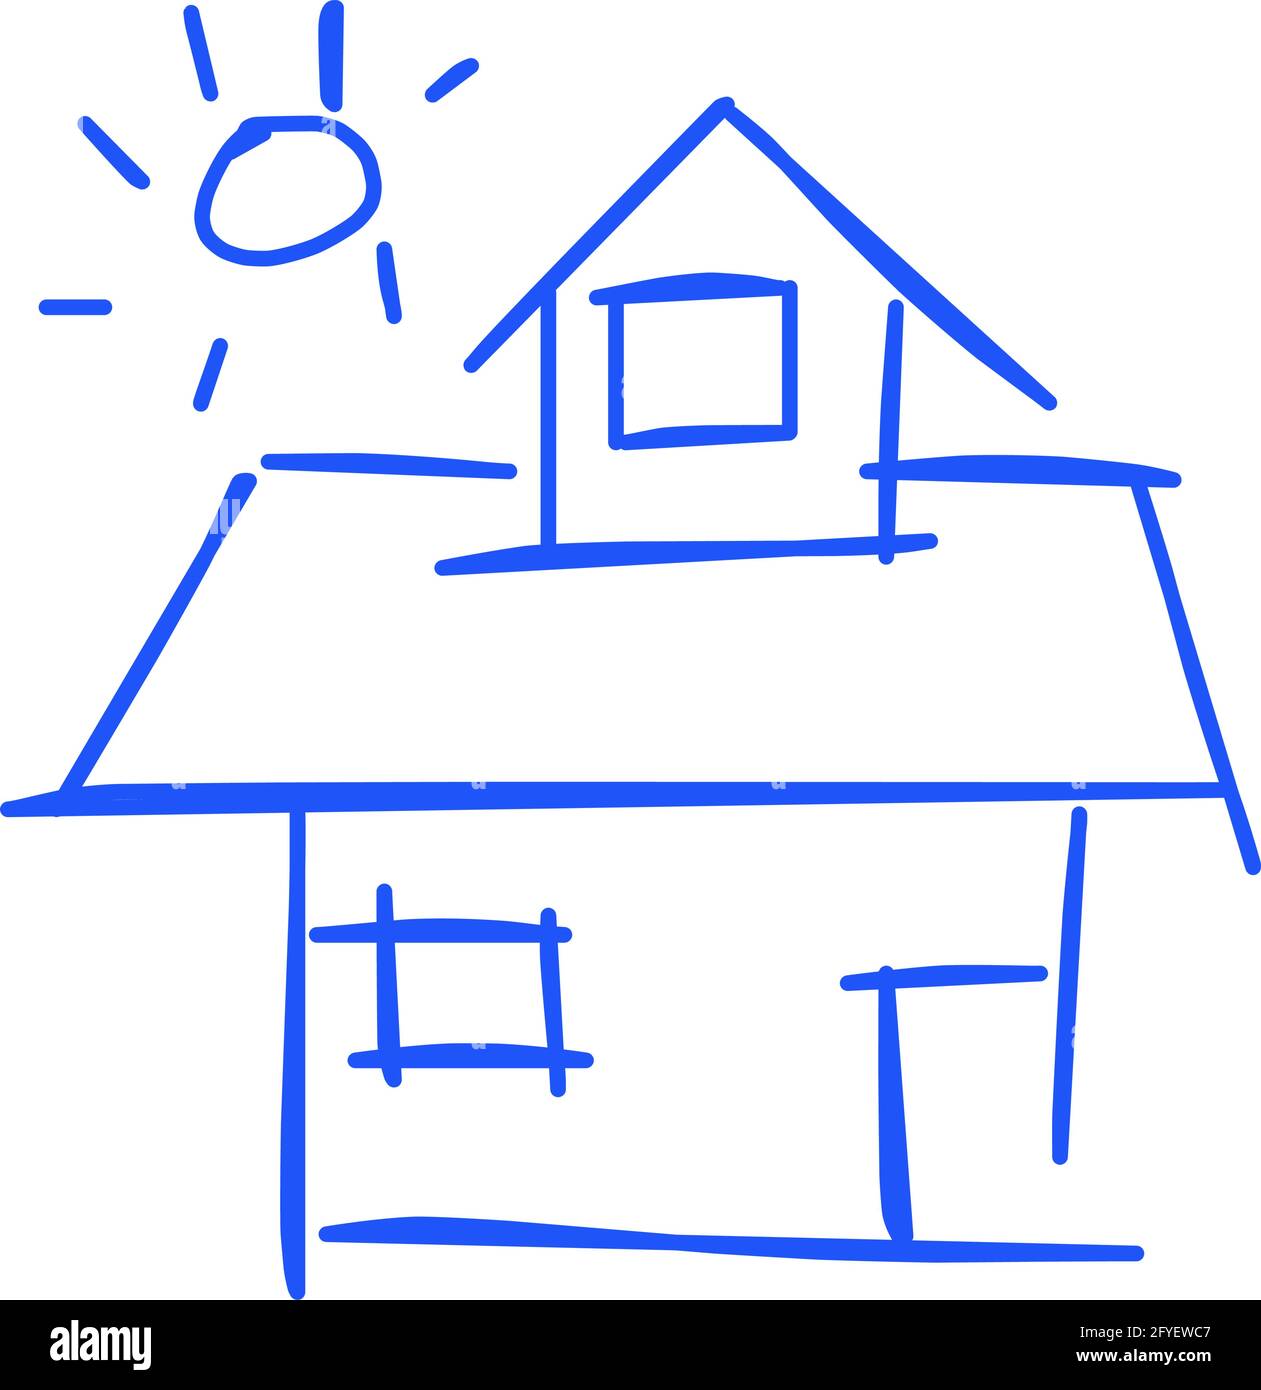 Icône de maison de l'art de ligne rugueux dans le style dessiné à la main, soleil, bleu 02 Illustration de Vecteur